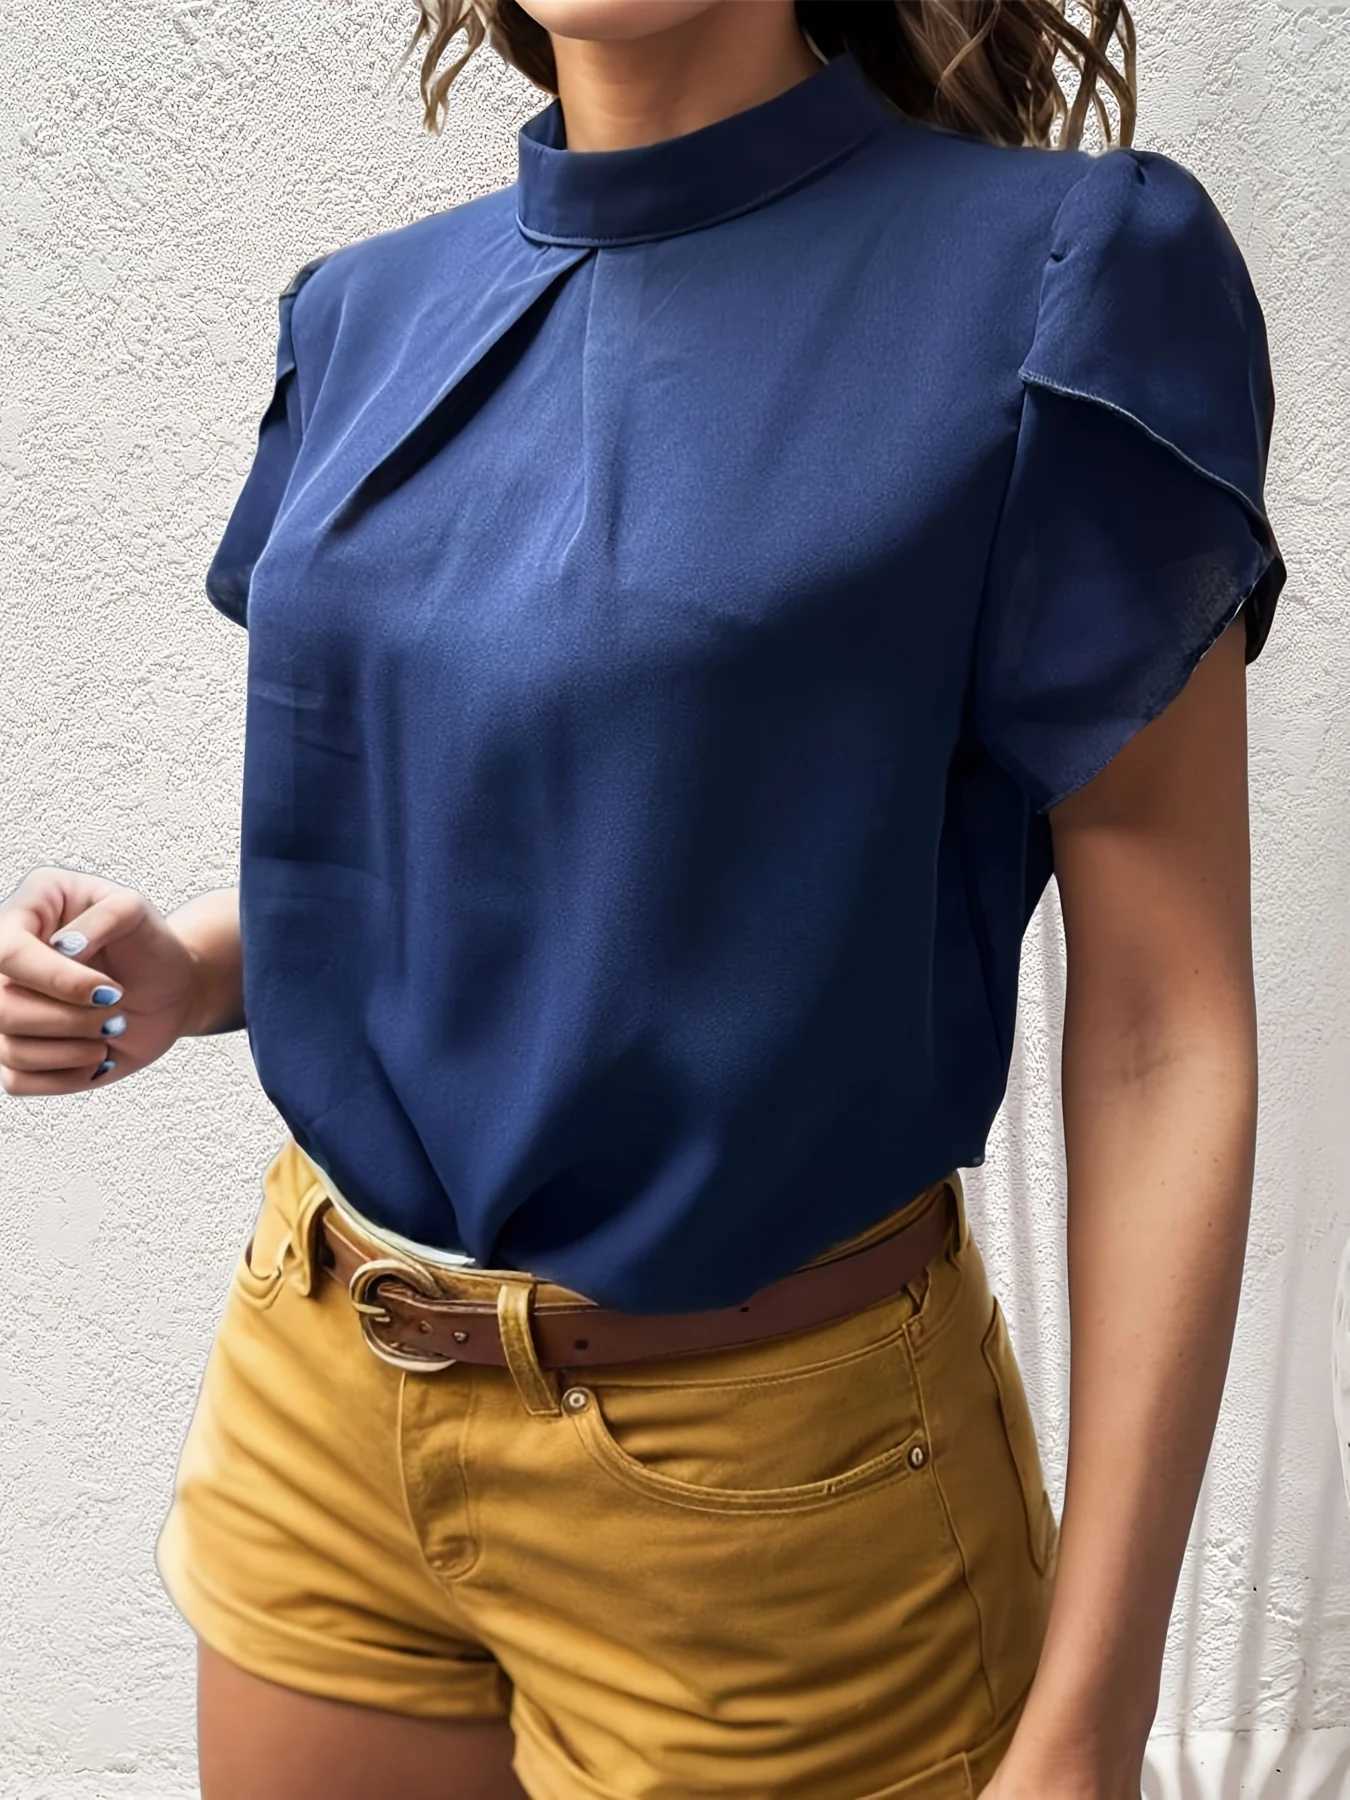 Camisas de blusas para mujeres Fashion Fashion Bloses de color sólido Camisas Collar Collar Collar Coloque Copias cortas Damas Summer Basic Elegante Top Y240426